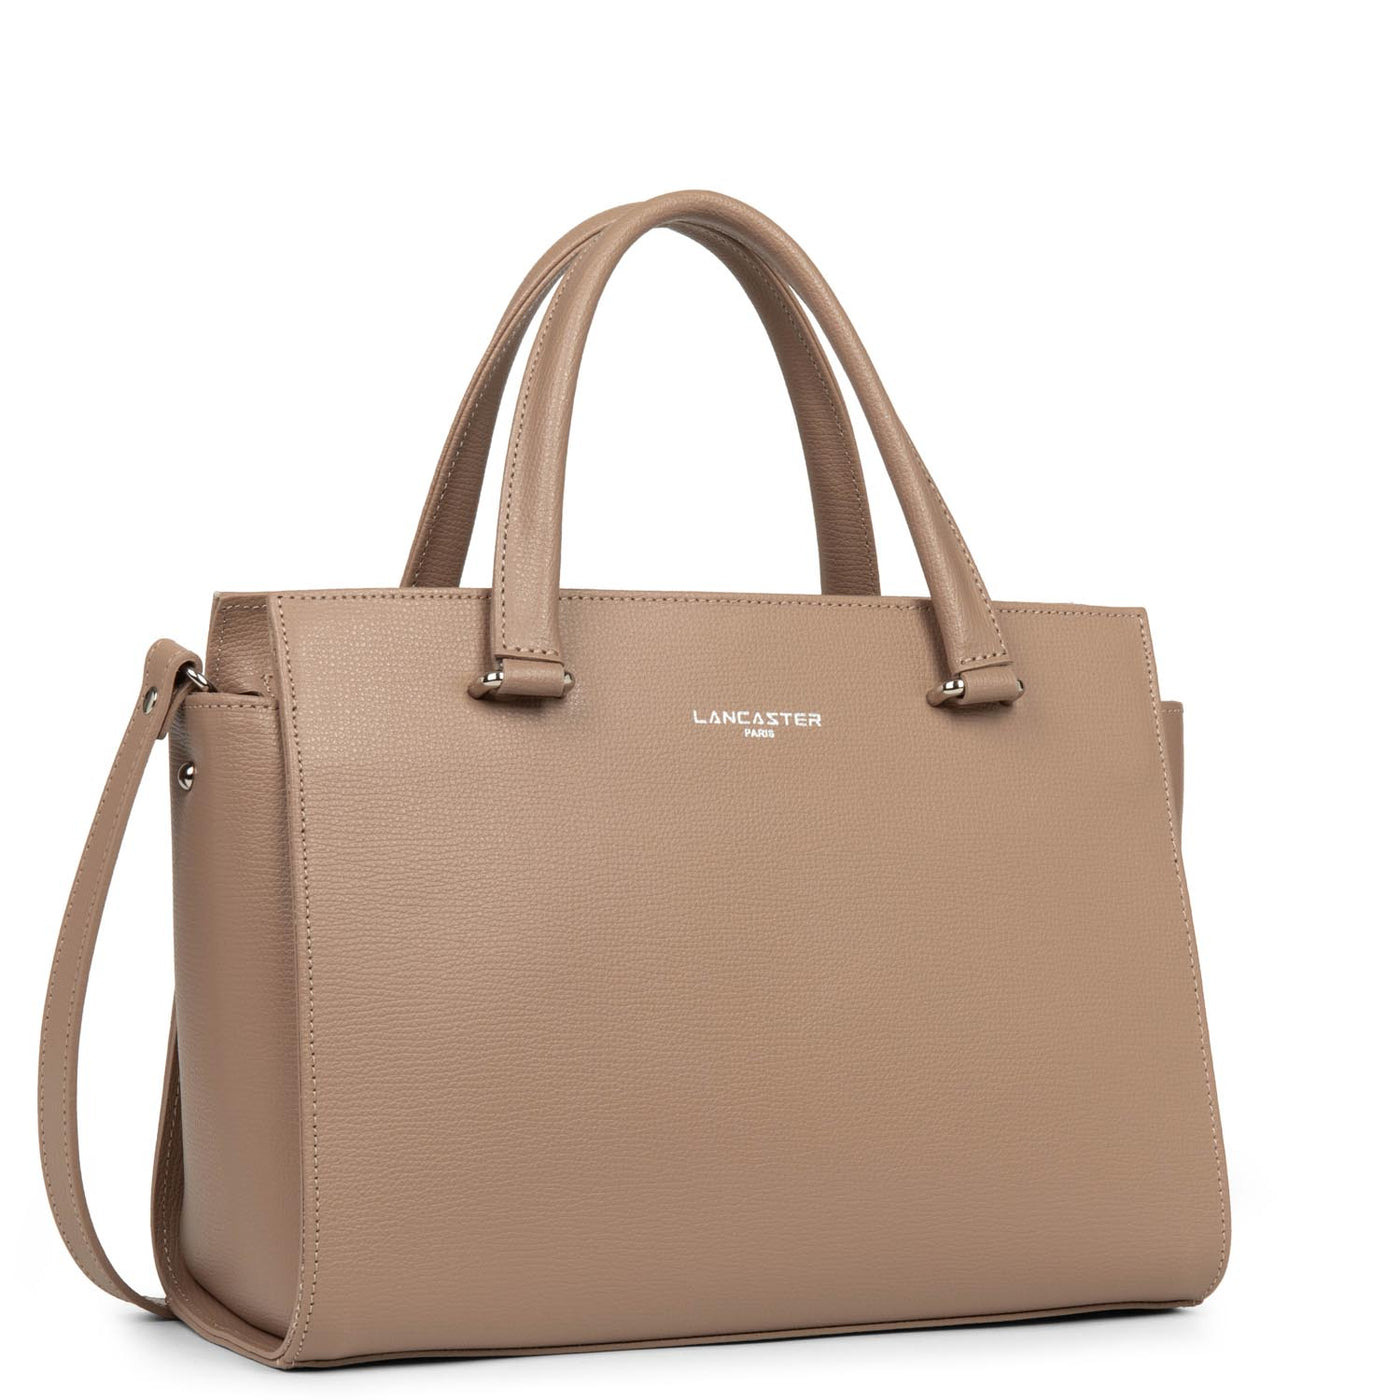 m handbag - sierra #couleur_galet